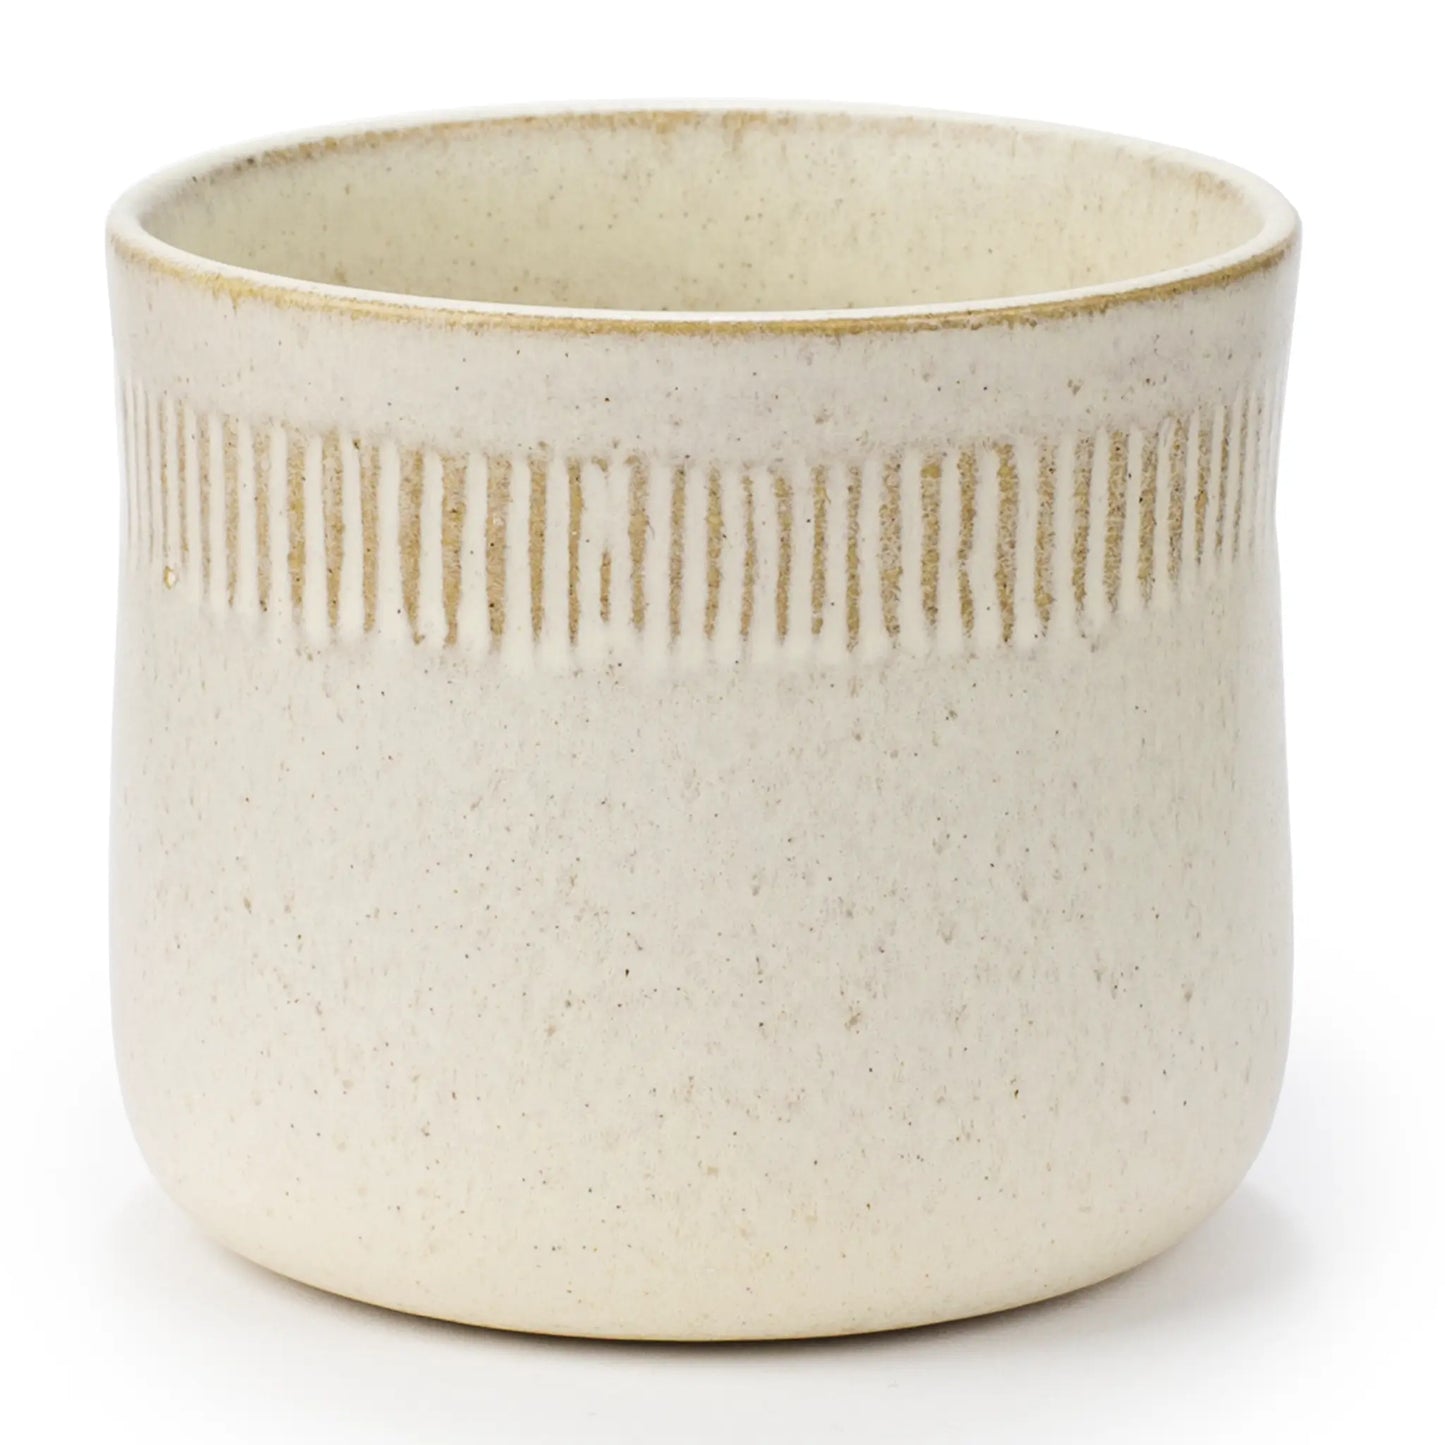 Cup är designad av Eva Staehr Nielsen och är en vit kaffe- och tekopp